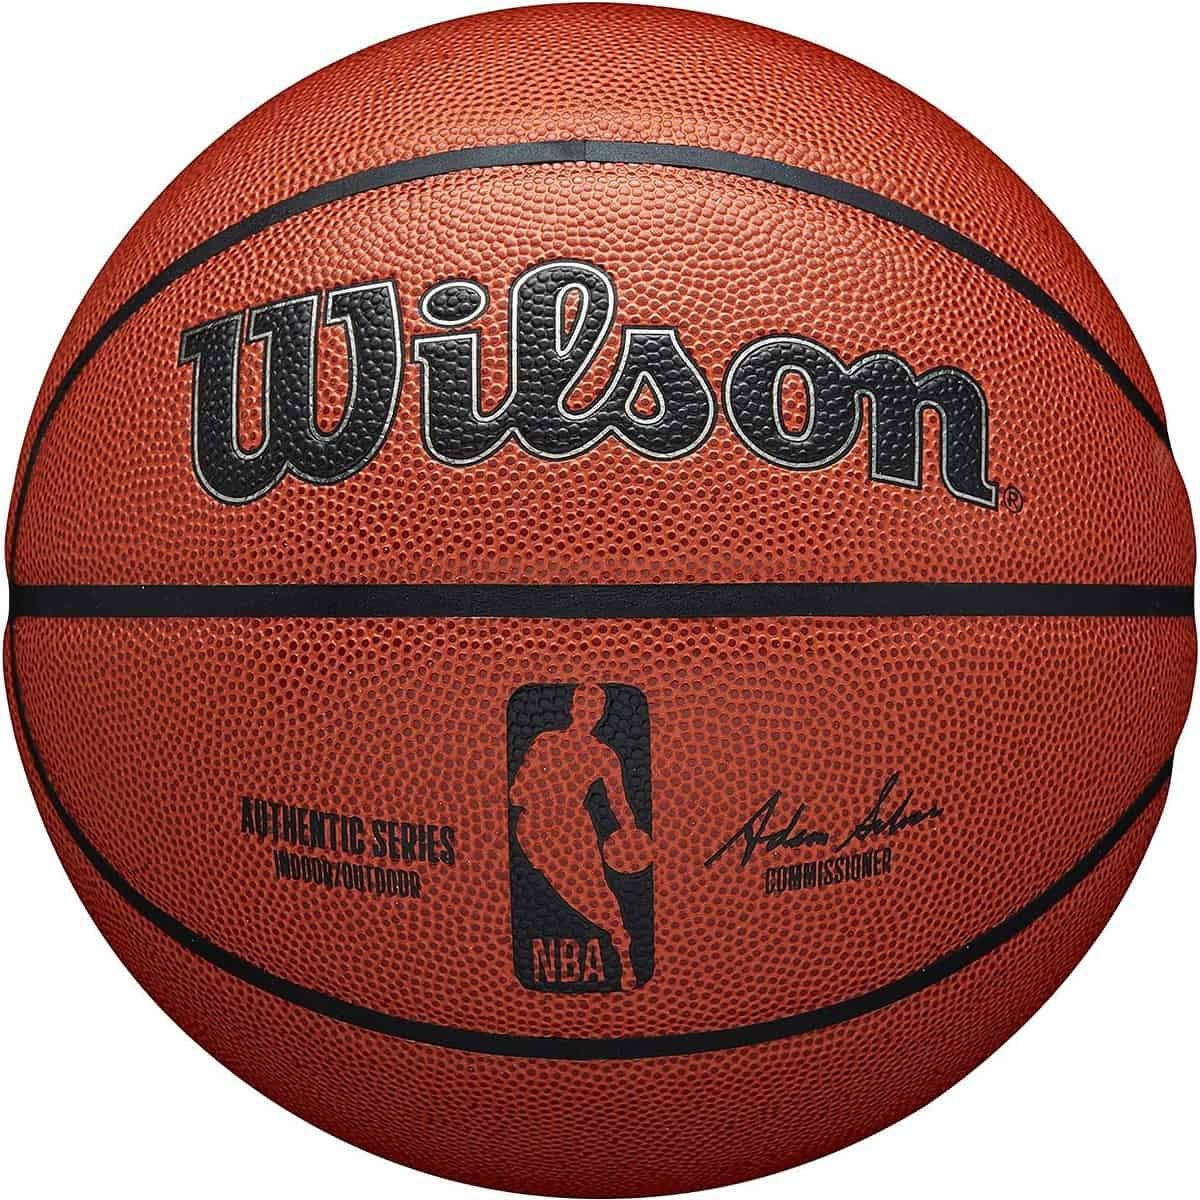 Wilson Basketball Nba Authentic Series (Indoor Outdoor, Mischleder, Größe )